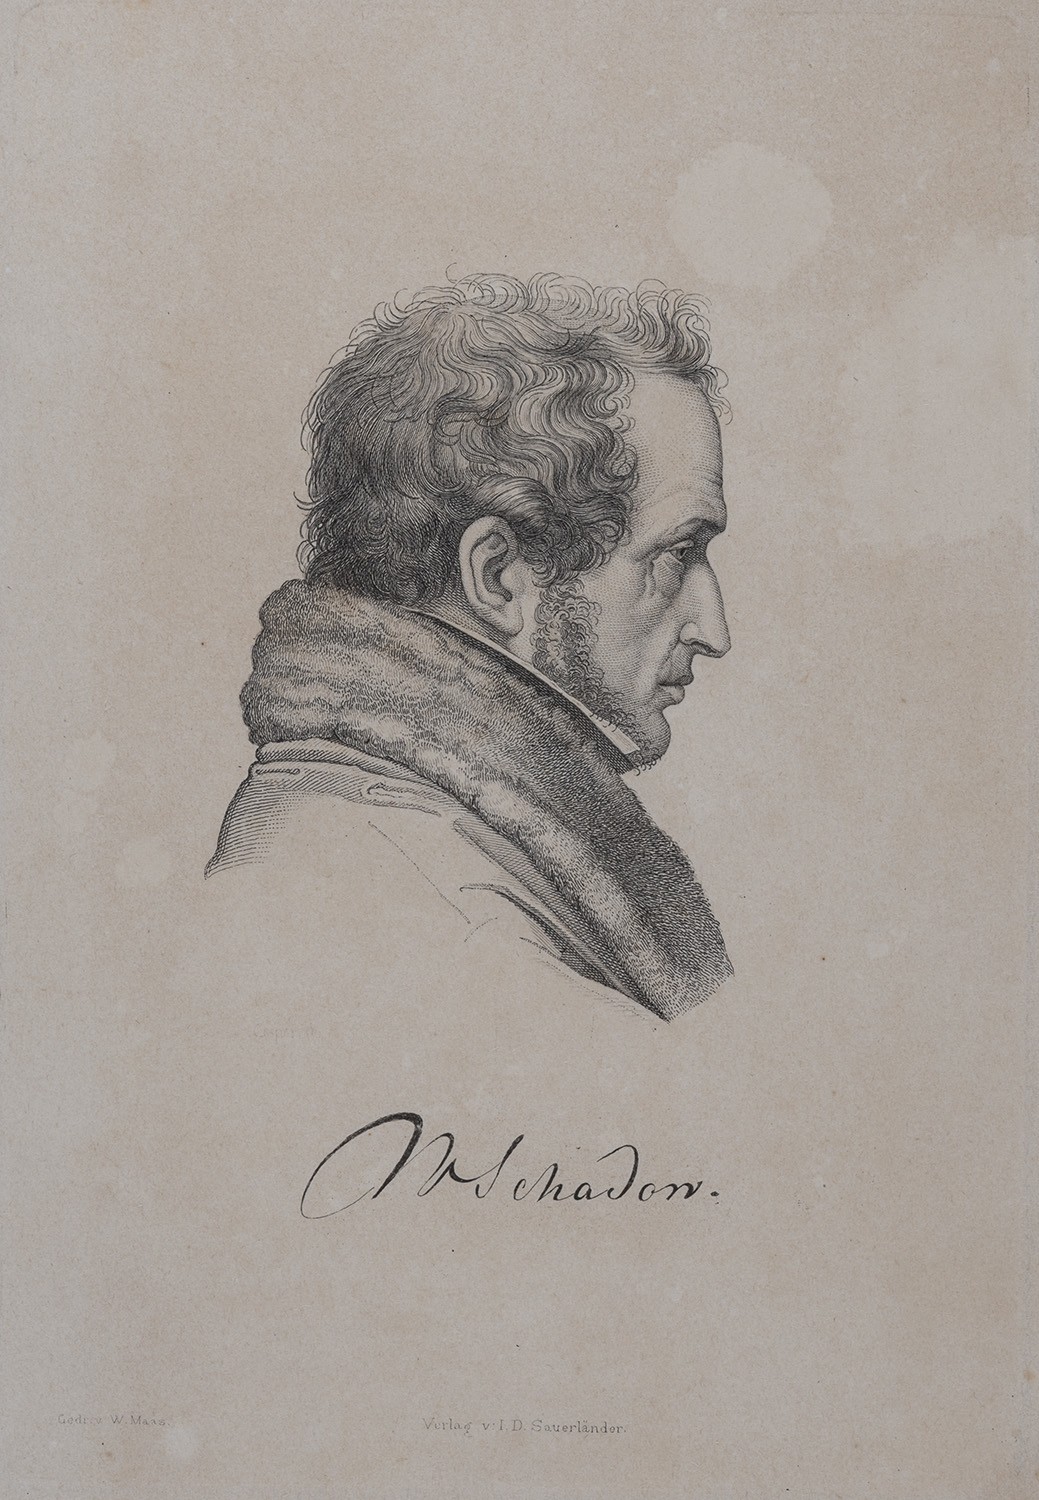 Schadow, Friedrich Wilhelm von (1789-1862) Maler (Landesgeschichtliche Vereinigung für die Mark Brandenburg e.V., Archiv CC BY)